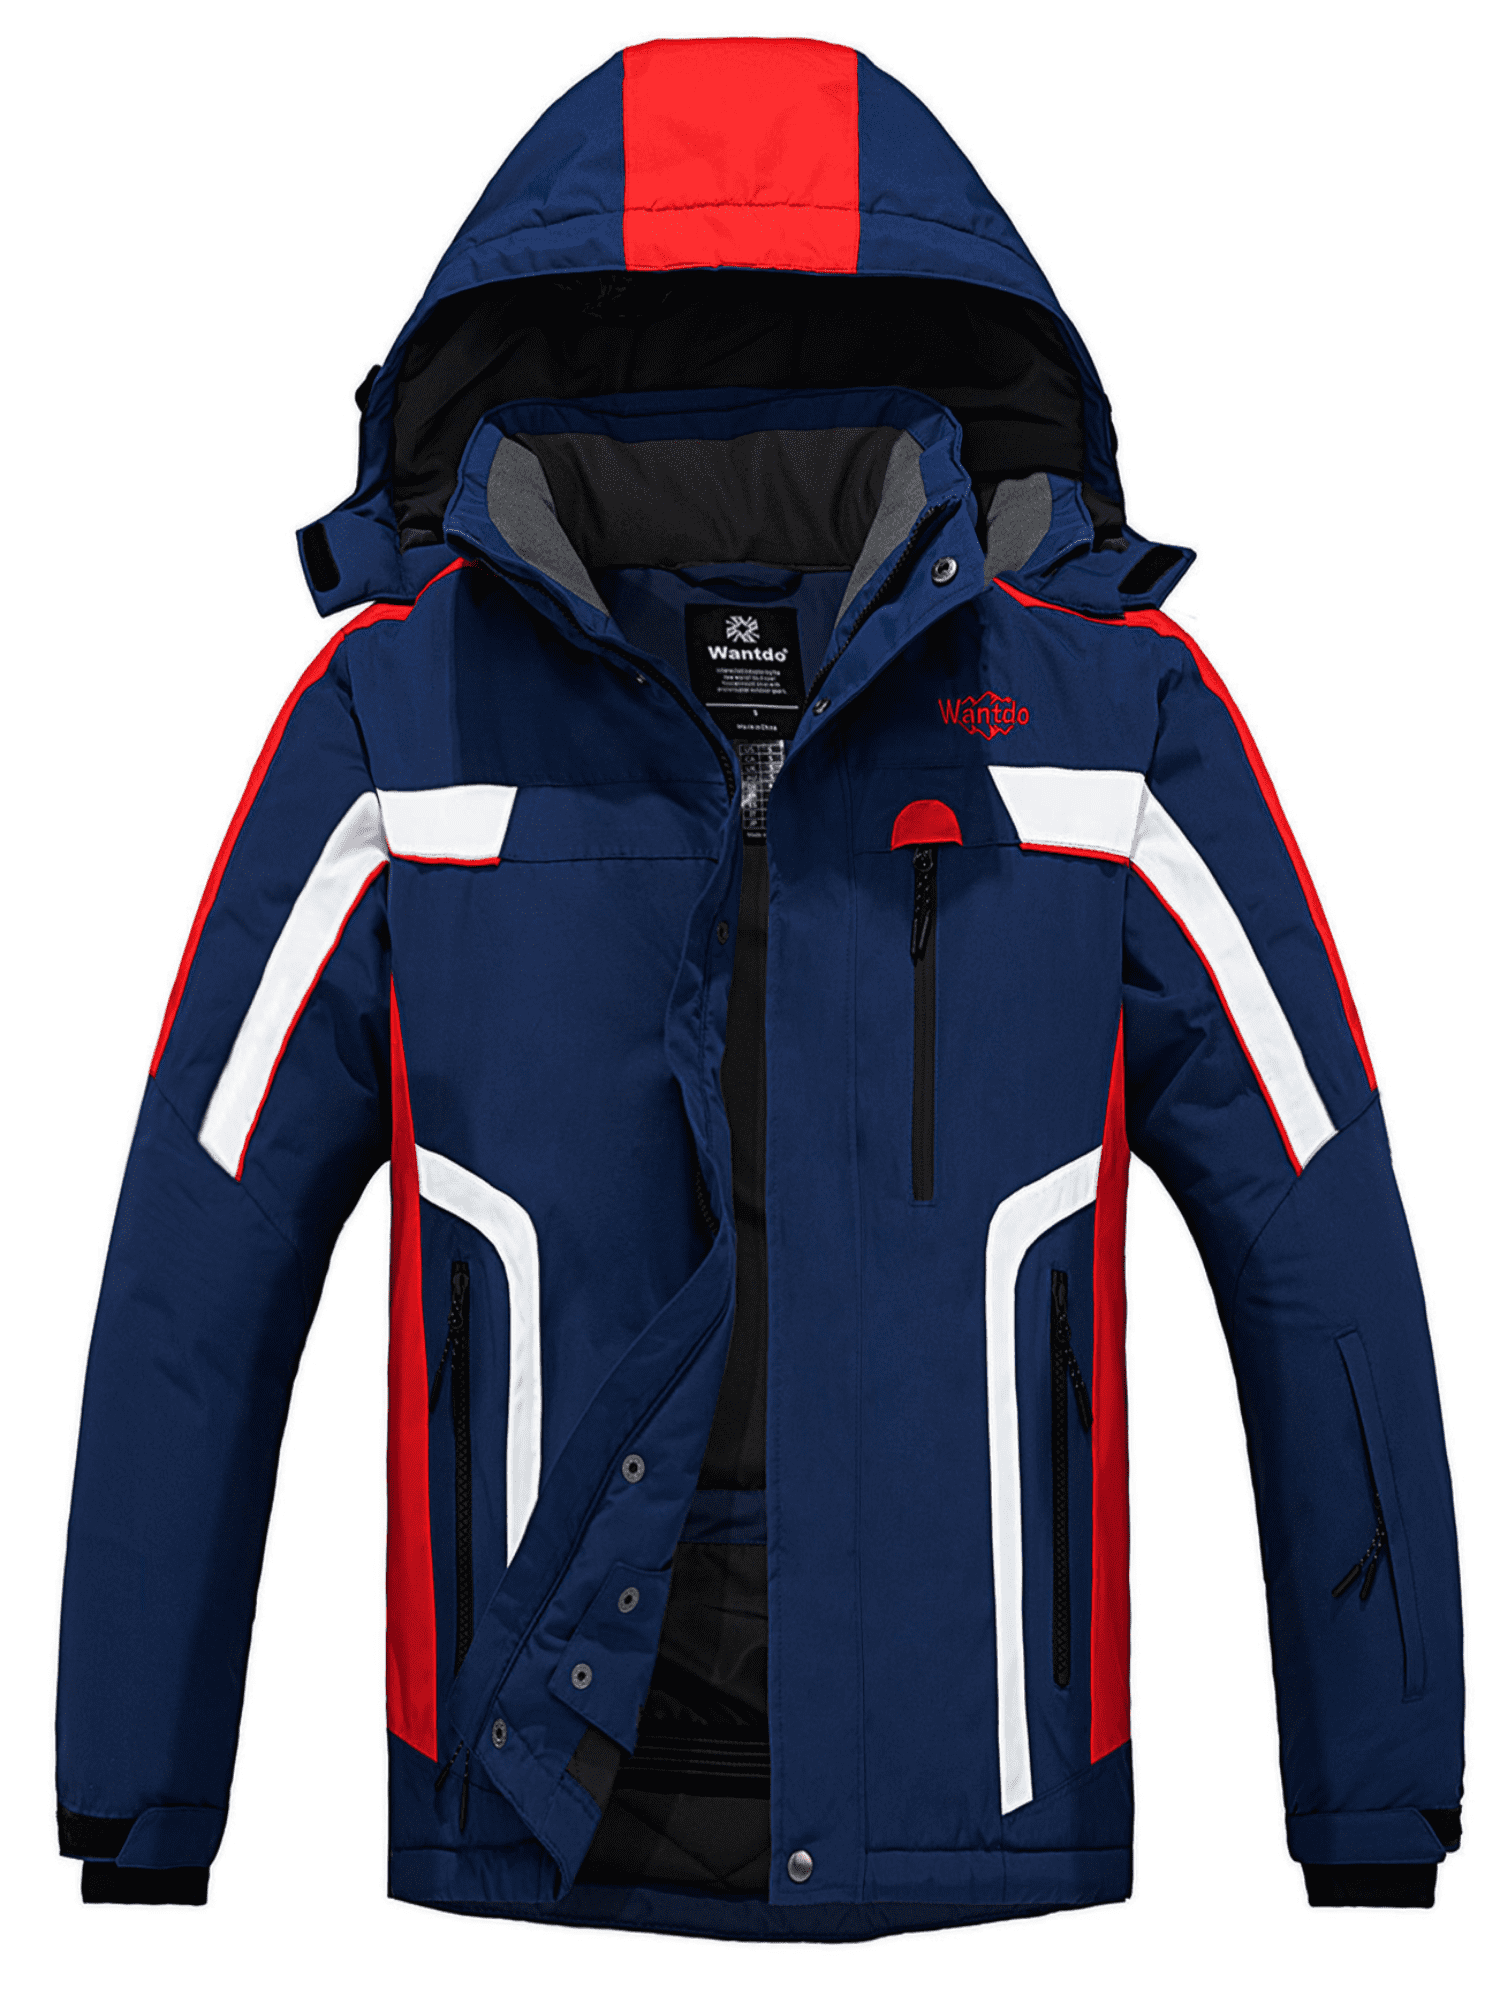 Wantdo Men's Winter Ski Jacket Waterproof Snow Coat Windproof Rain Coat ...